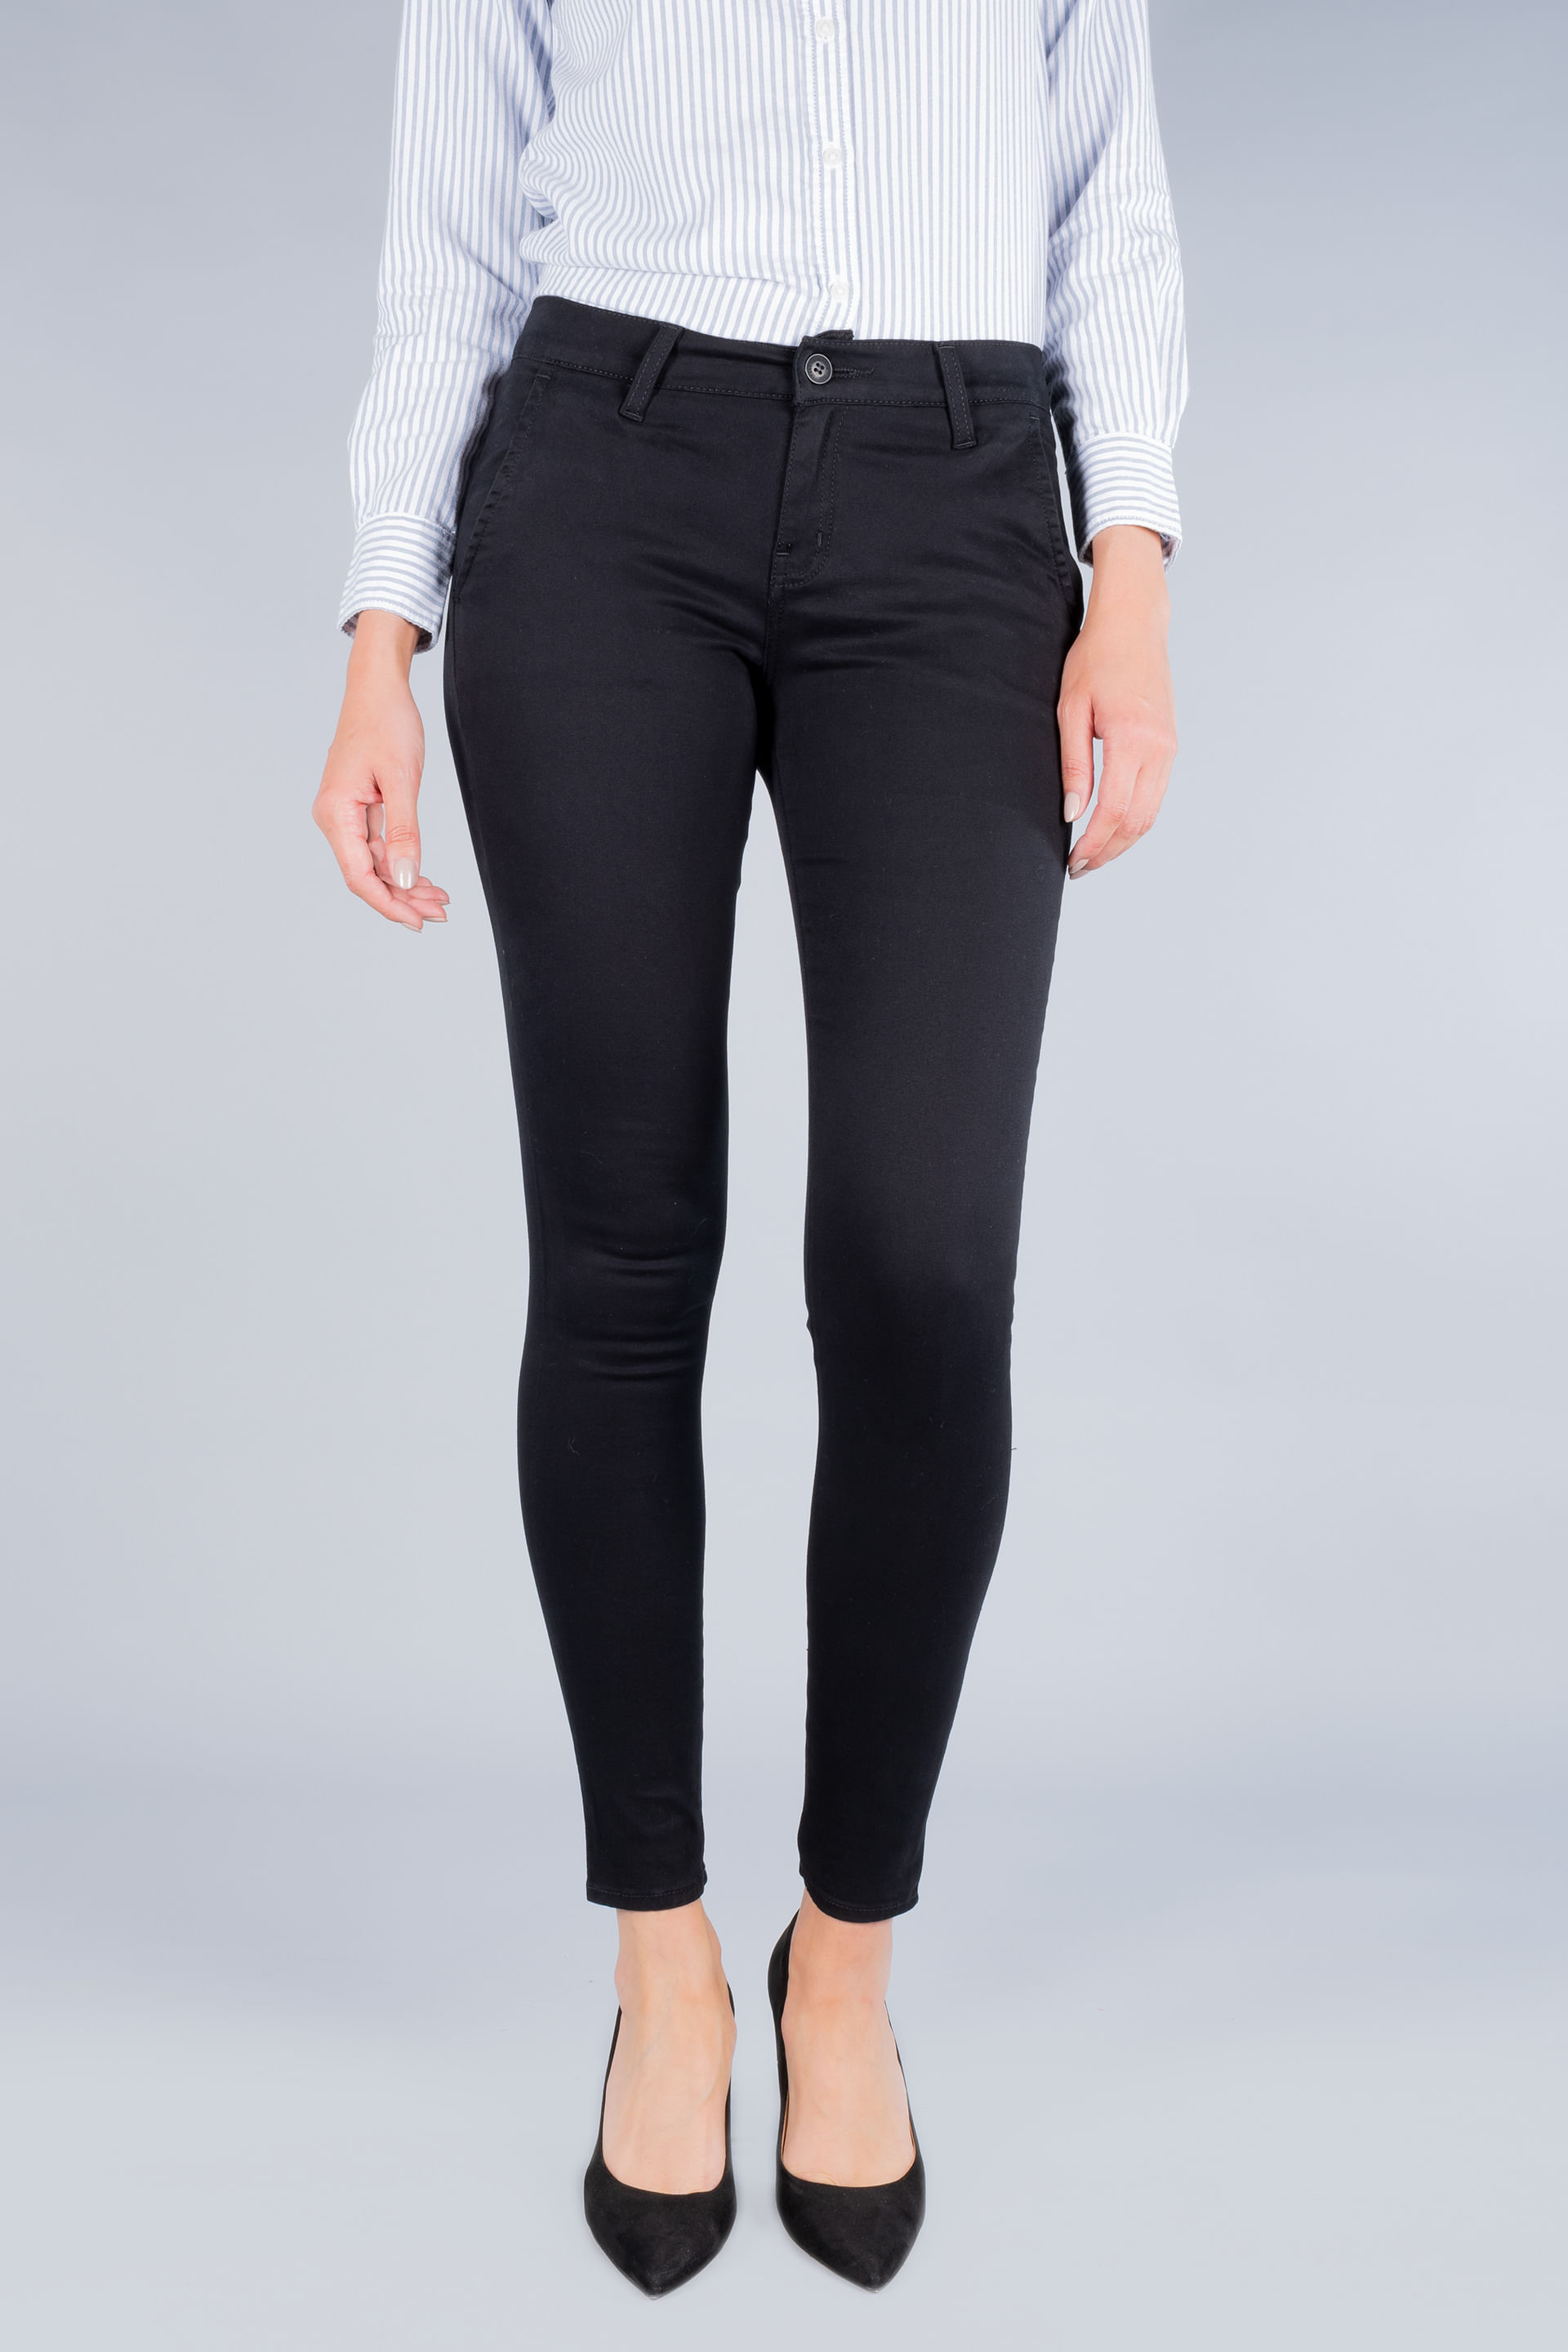 Los diseños en pantalones para mujer | Oggi Jeans